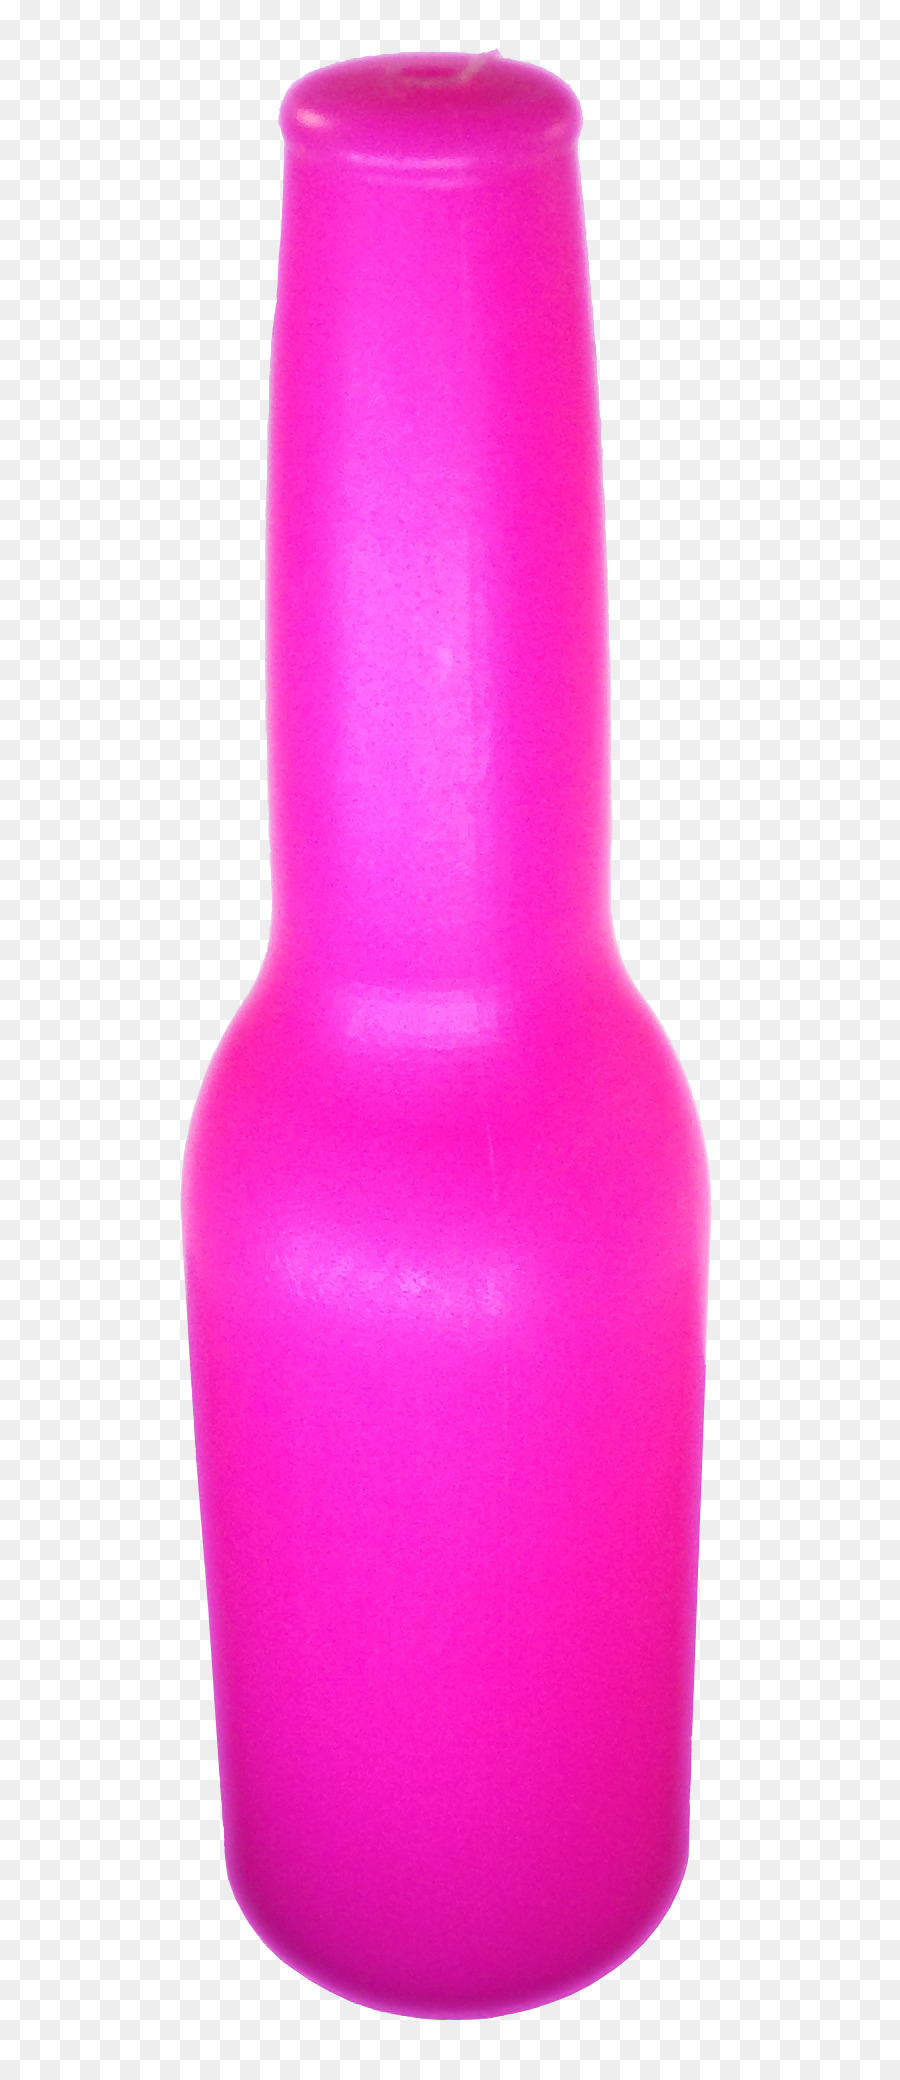 Flasche Bilderrahmen Vase Produkt Target Corporation - rosa bowling pin Flasche Wasser